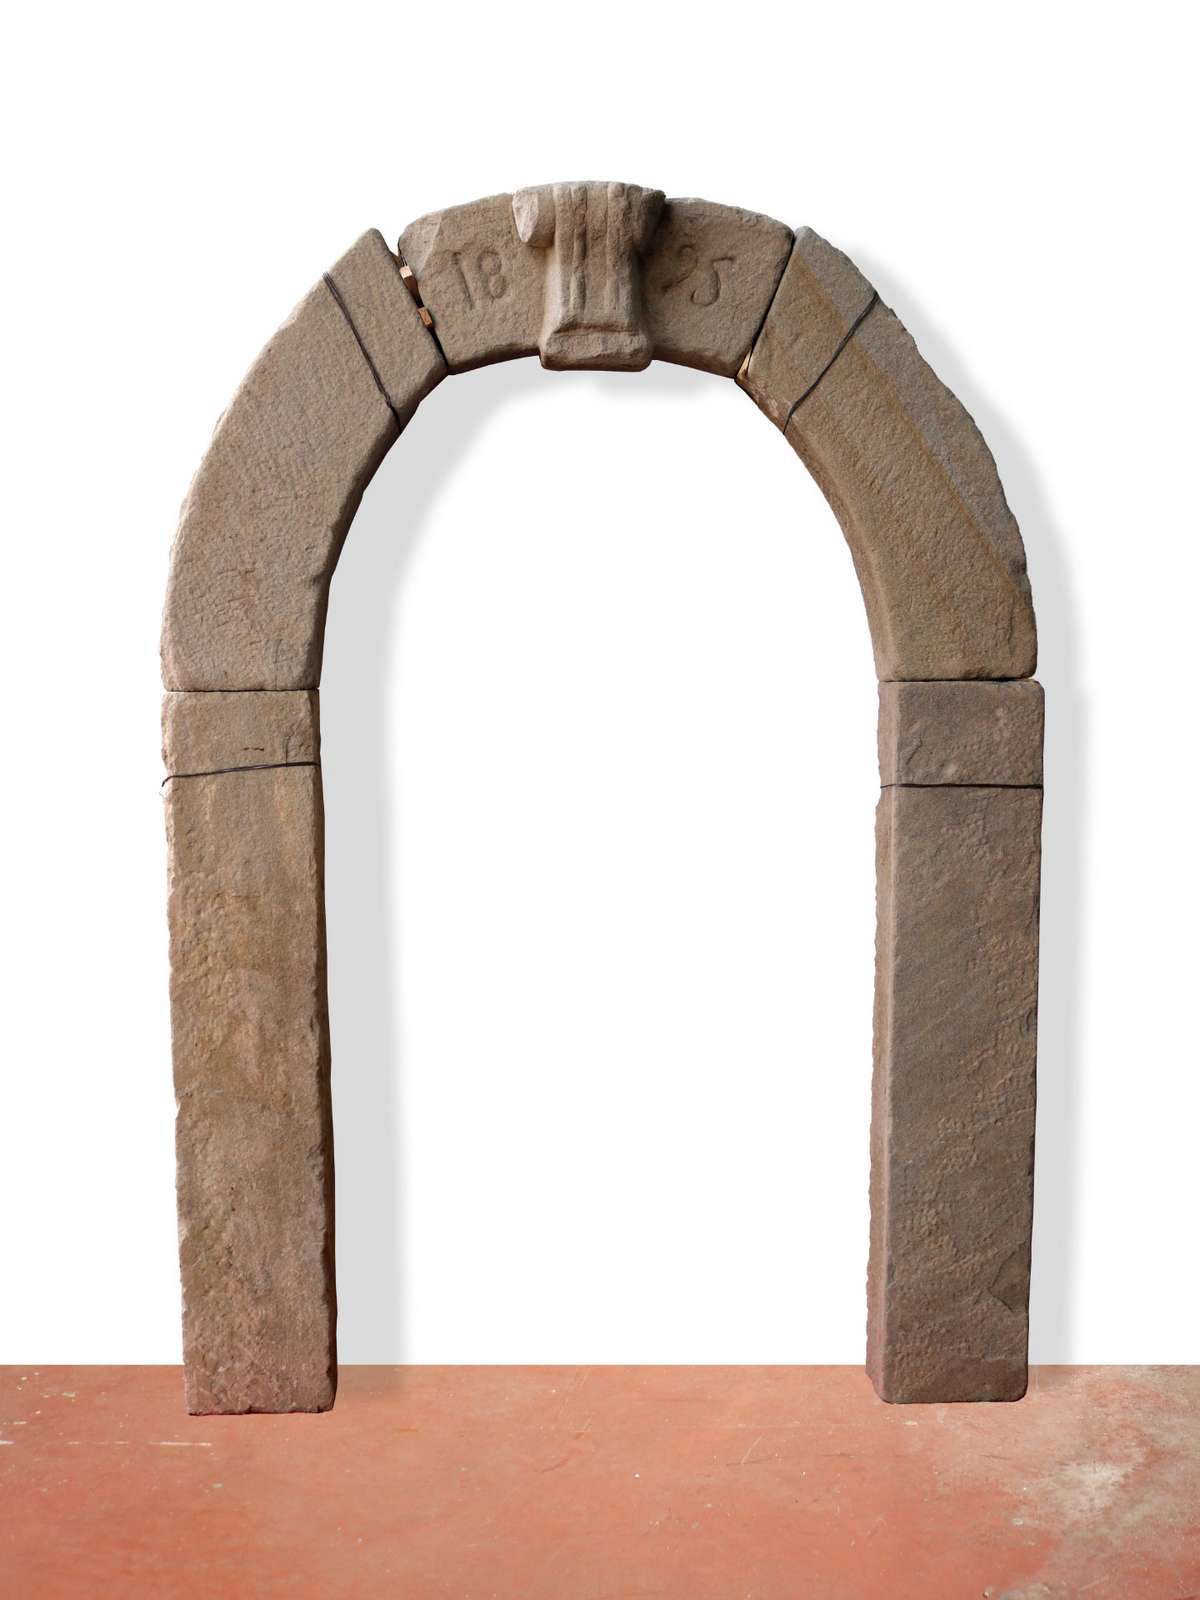 Antico portale in pietra datato 1895. - Portali, Finestre e Cornici - Architettura - Prodotti - Antichità Fiorillo